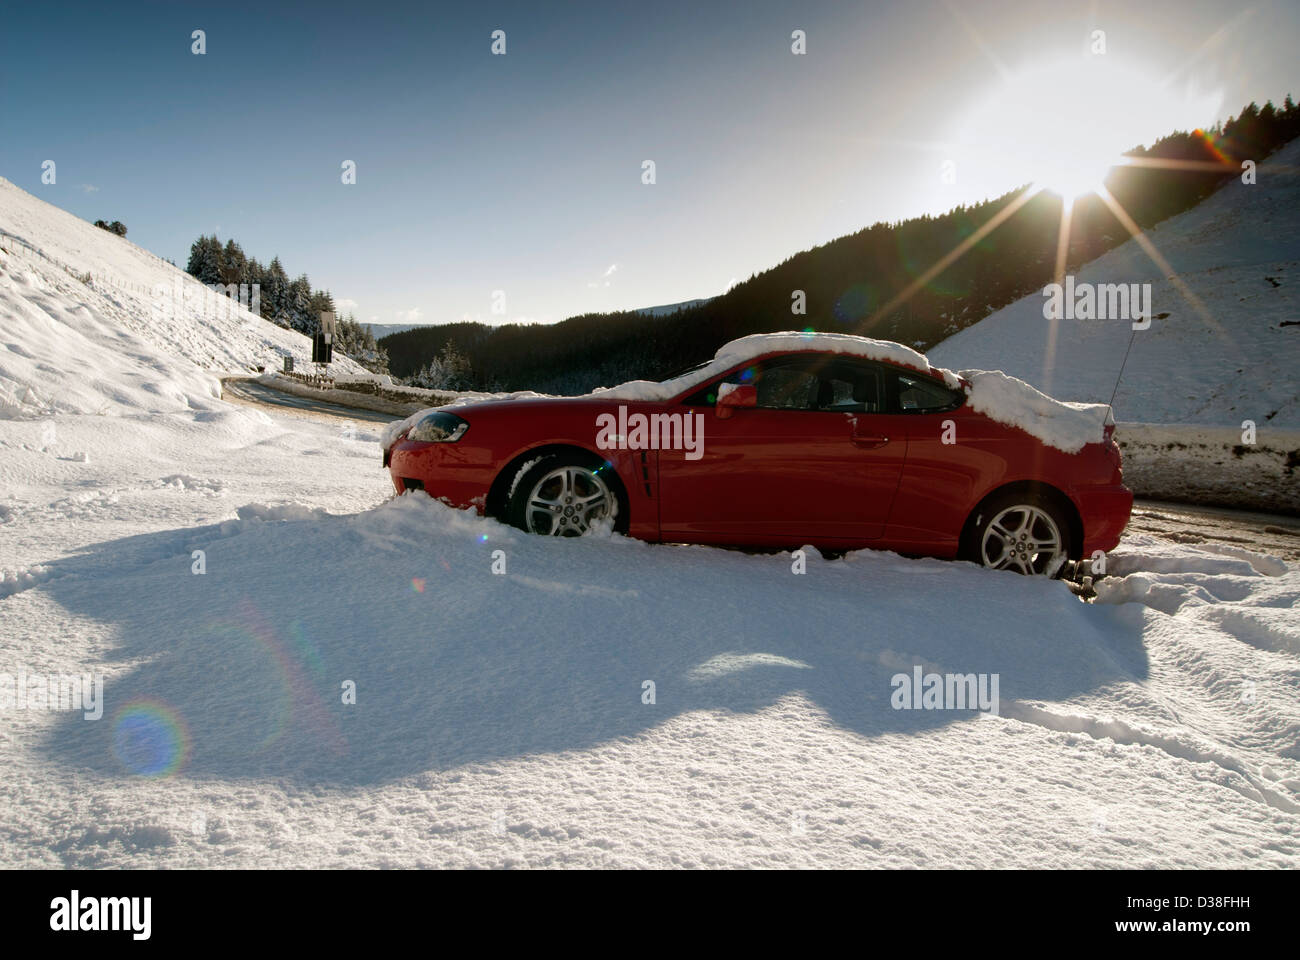 Auto im Schnee, schlechtes Wetter, starker Schneefall, rot, weiß, blau, Schatten, Sonne, isoliert aufgegeben, Stockfoto